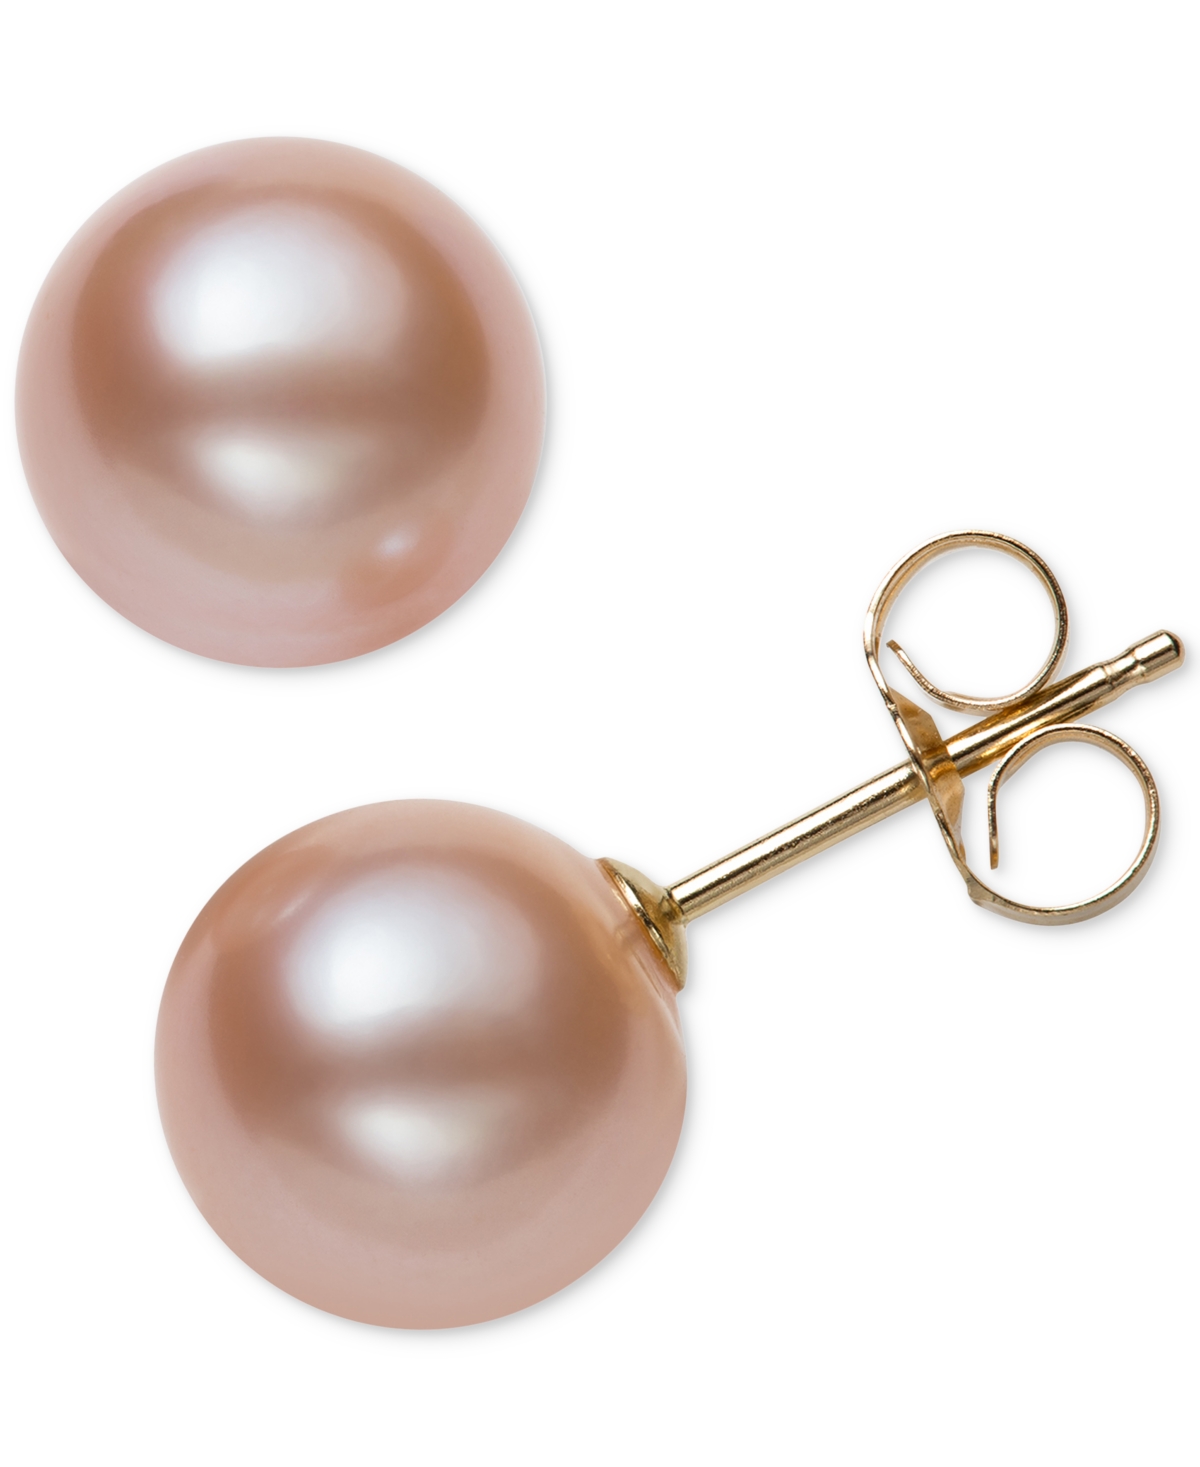 Belle de Mer Cultured Freshwater Pearl Stud Earrings (7mm) in 14k Gold